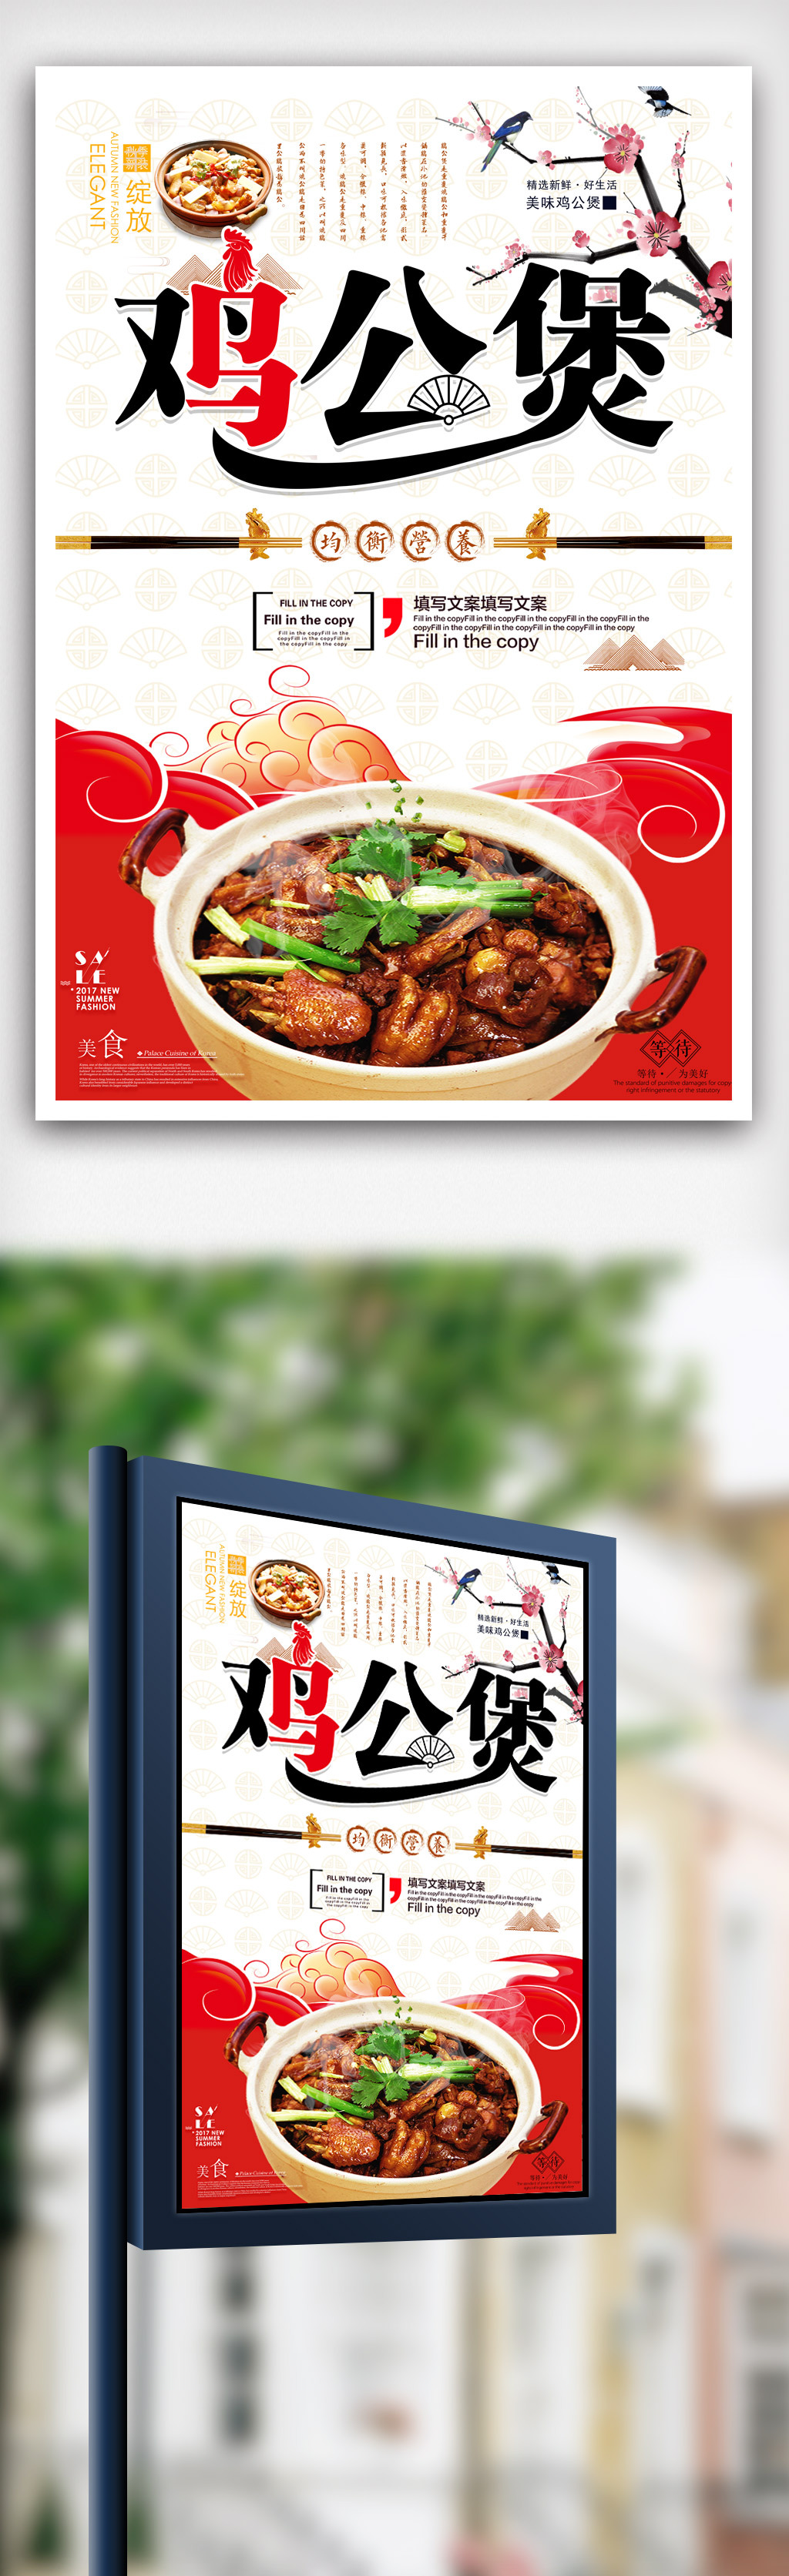 简约鸡公煲中华美食宣传海报设计.psd图片